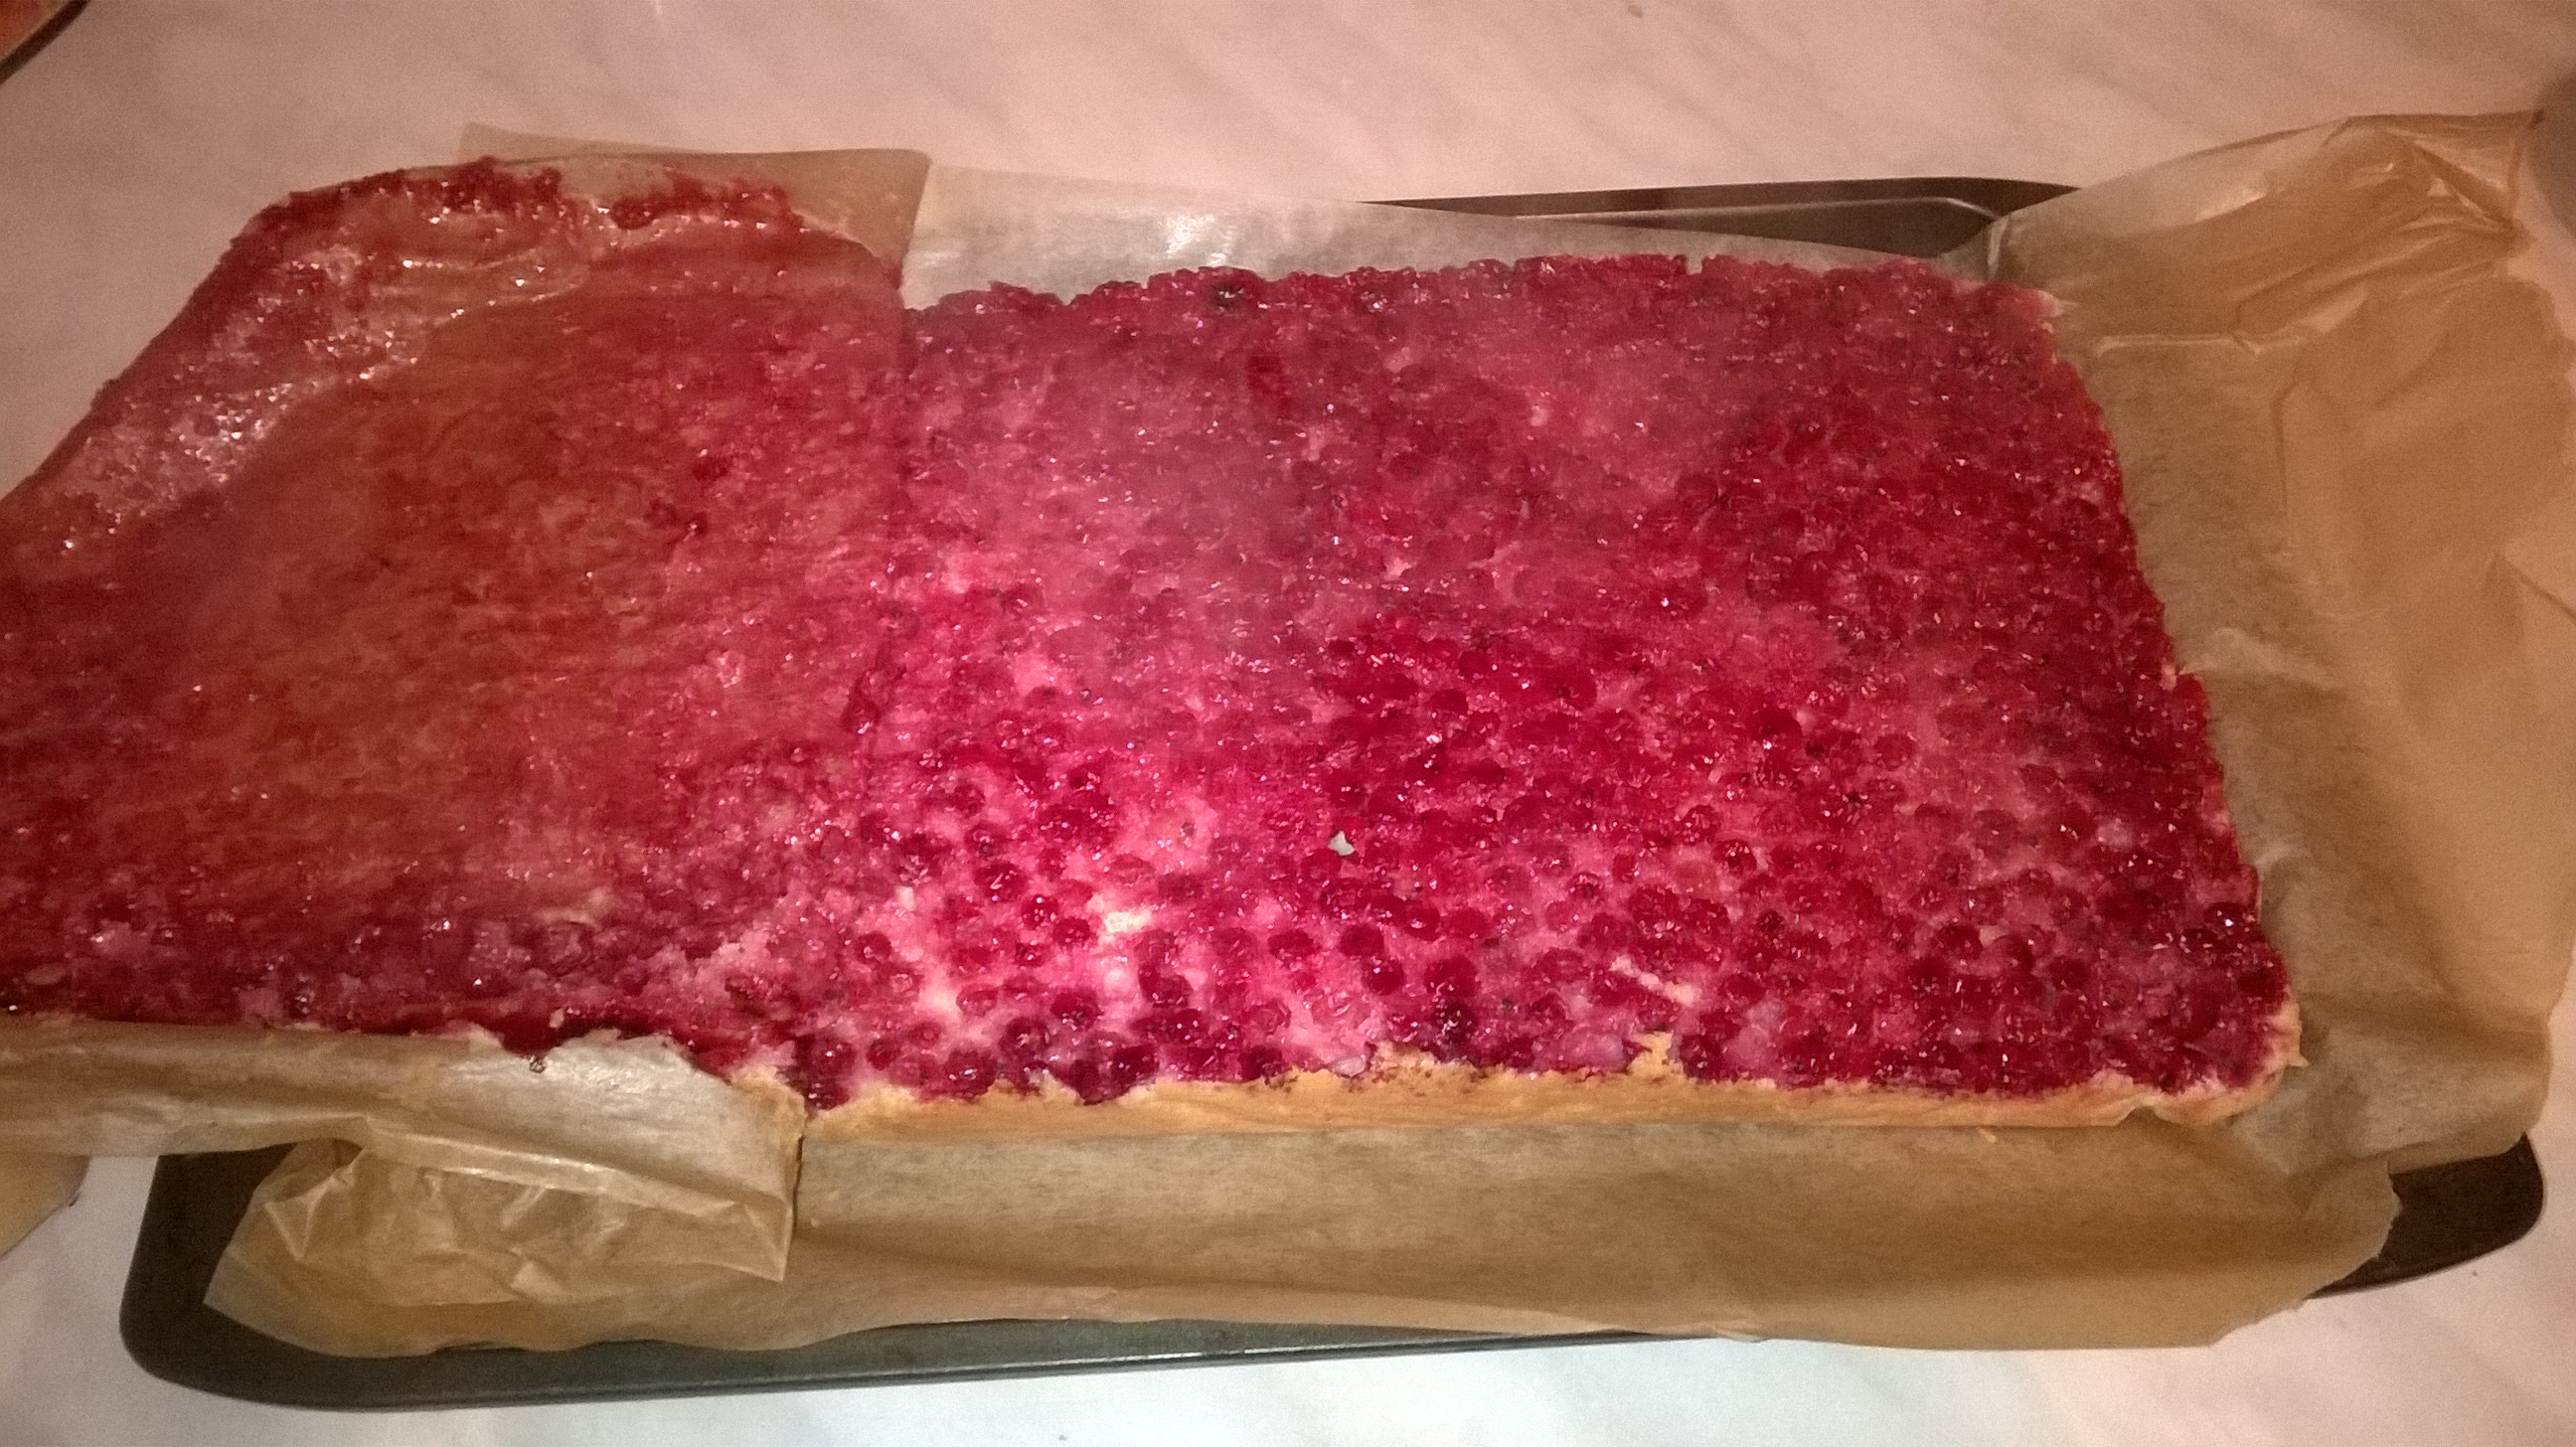 Desert prajitura cu coacaze rosii